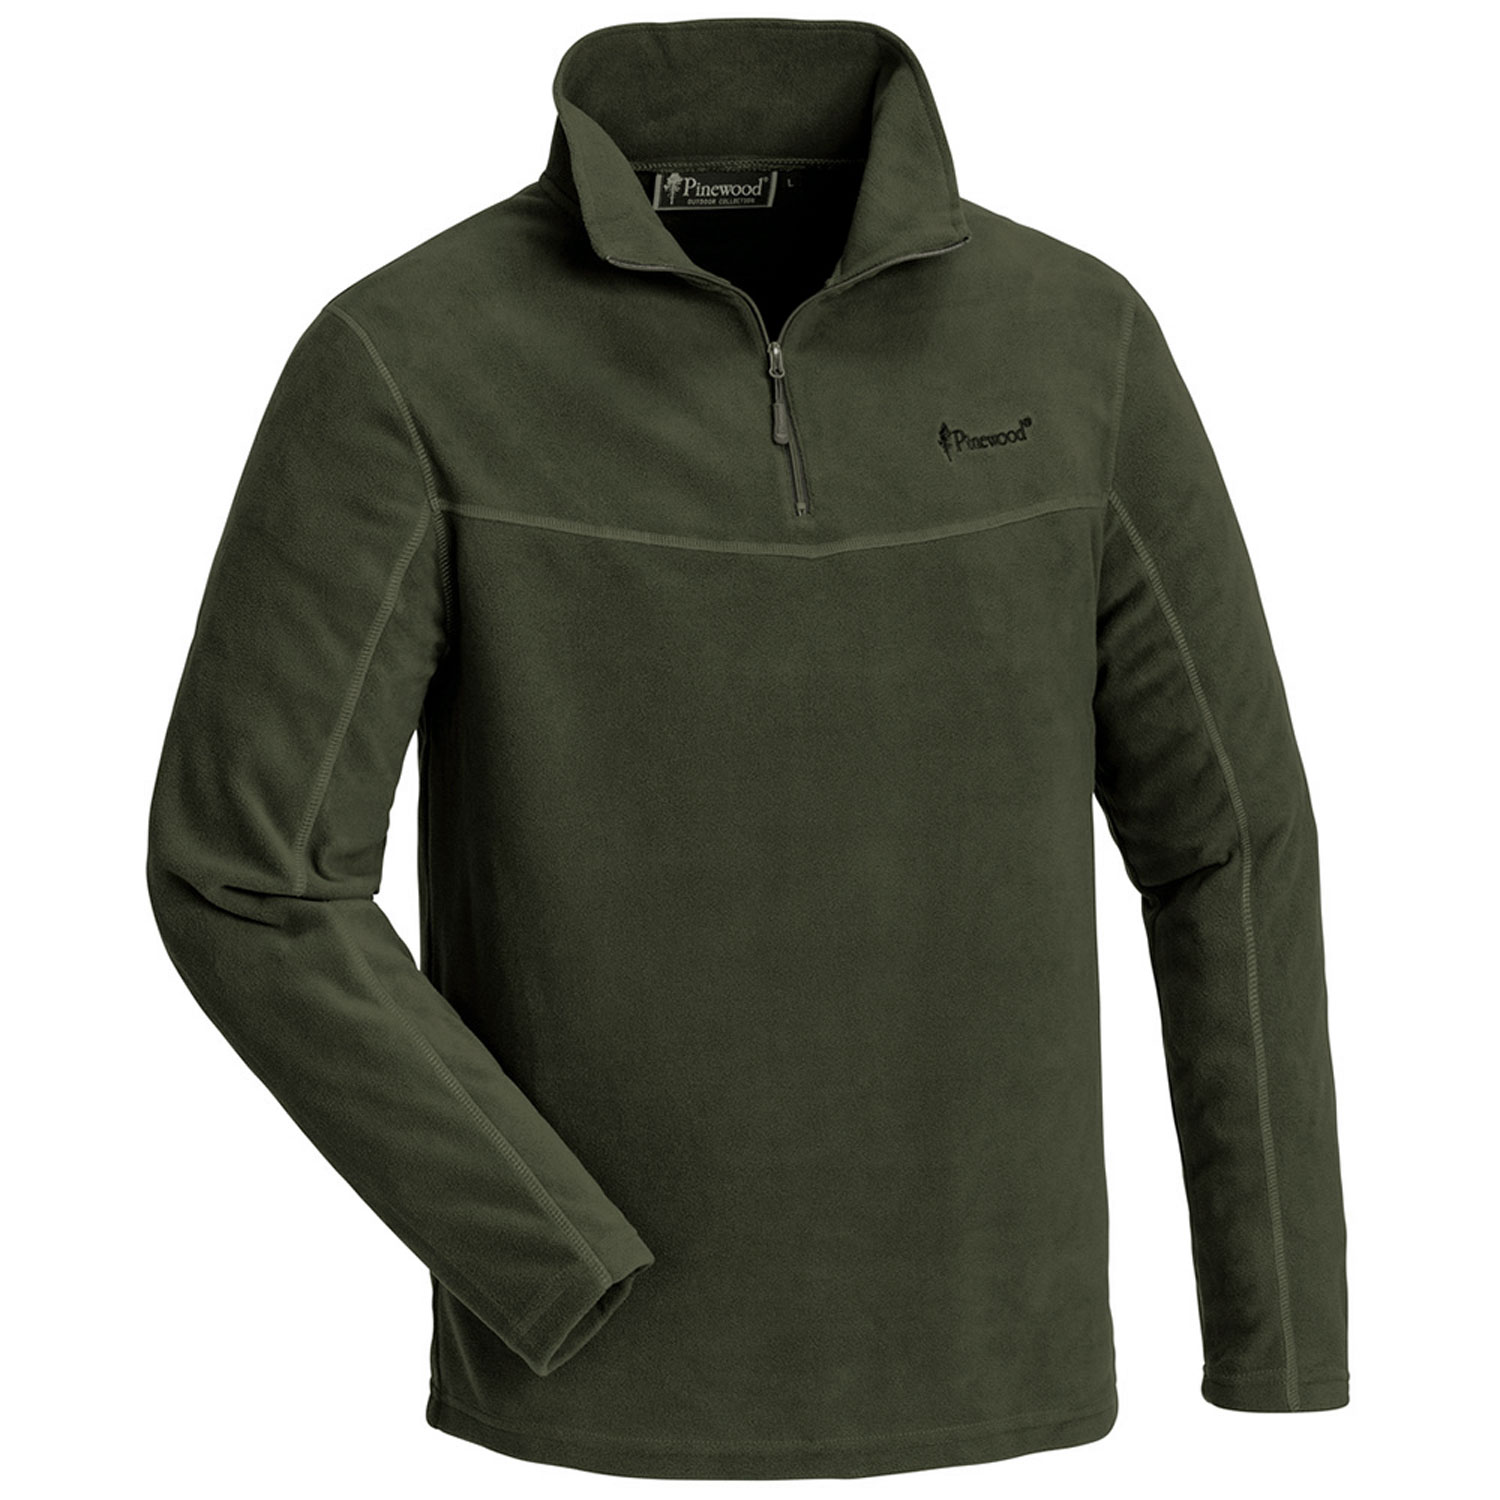 Pinewood Fleece Sweater Tiveden (dark green) - Neu im Shop